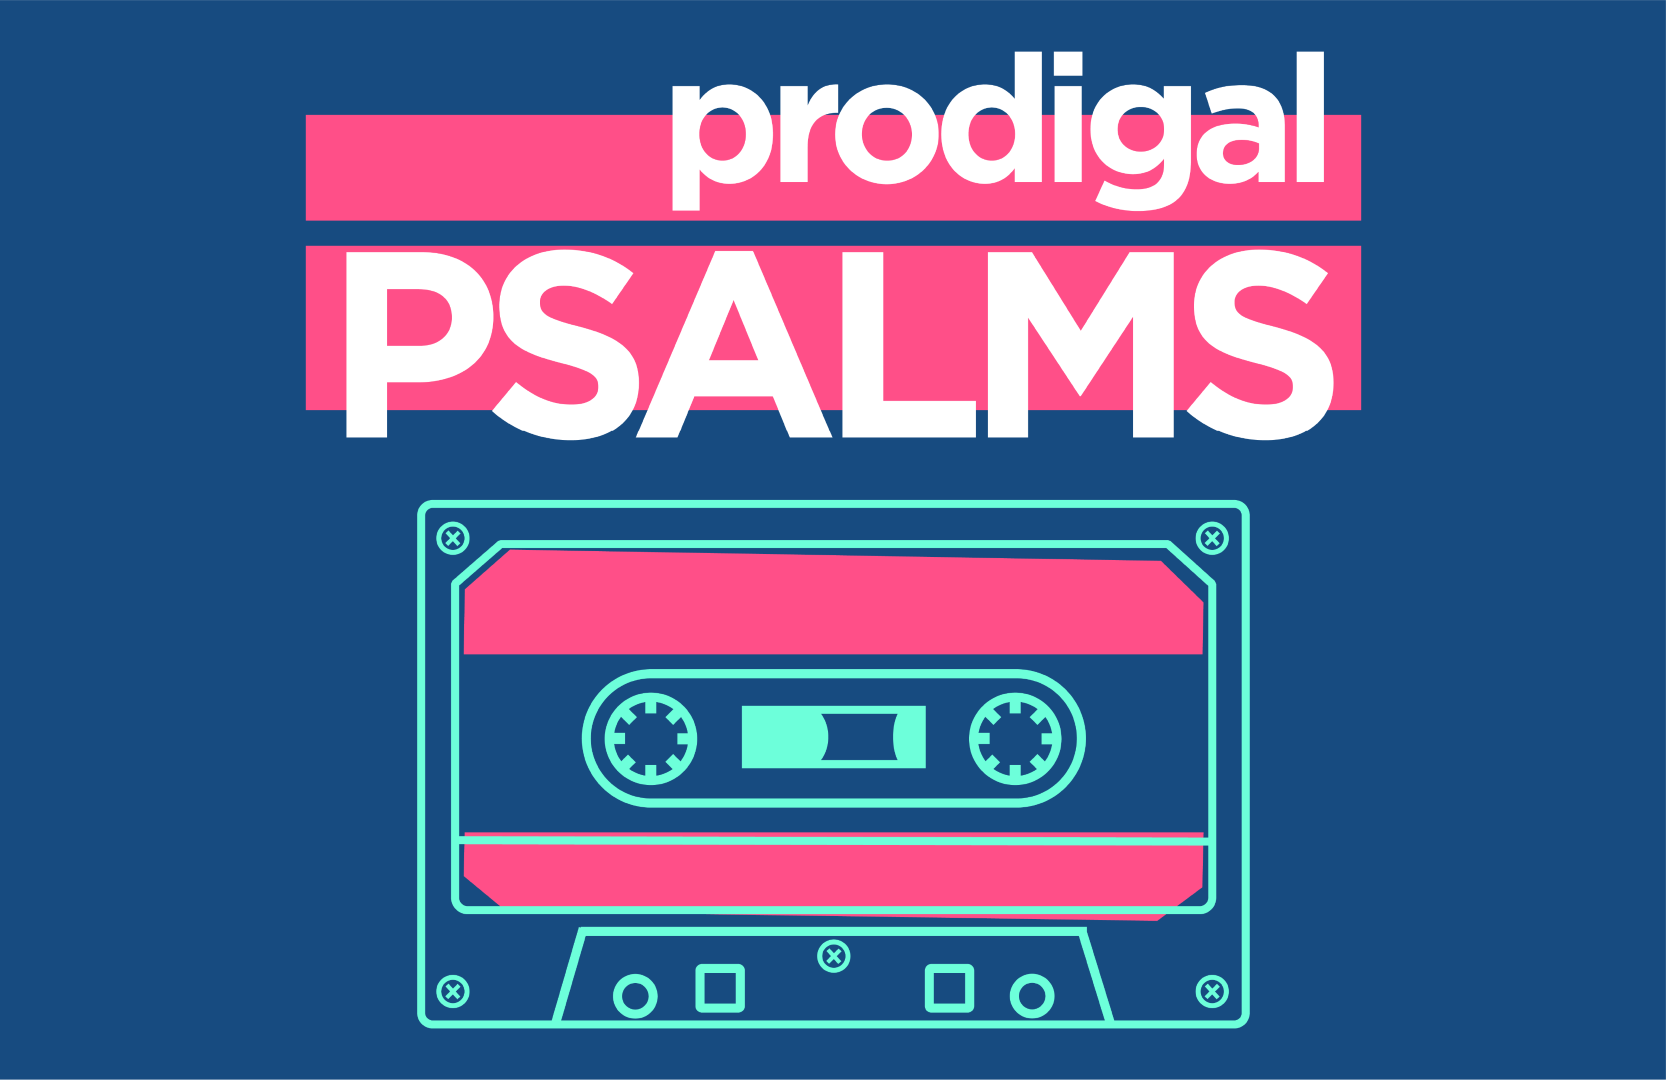 Prodigal Psalms